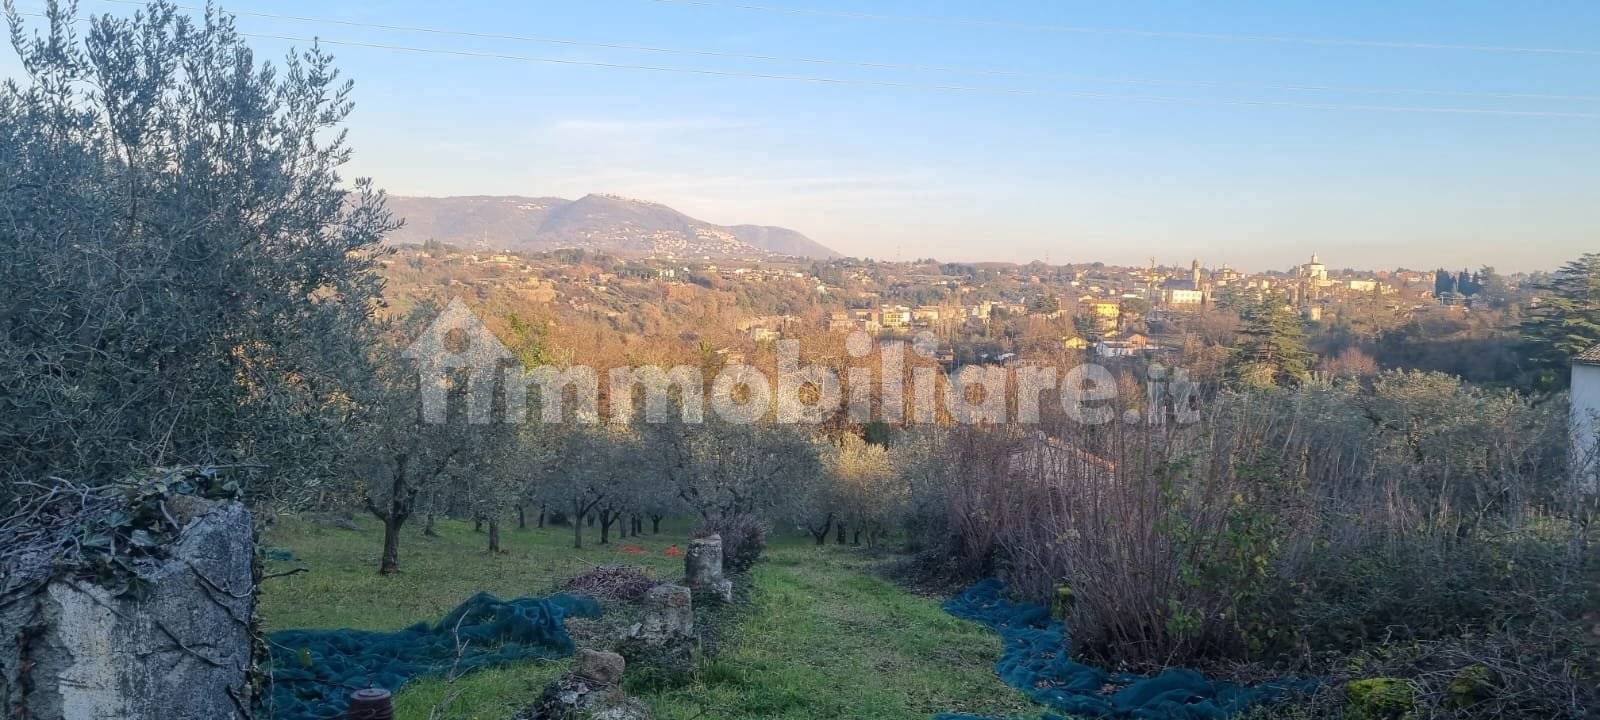 Terreno agricolo via Colle Ripa, Zagarolo, rif. 101061909 - Immobiliare.it